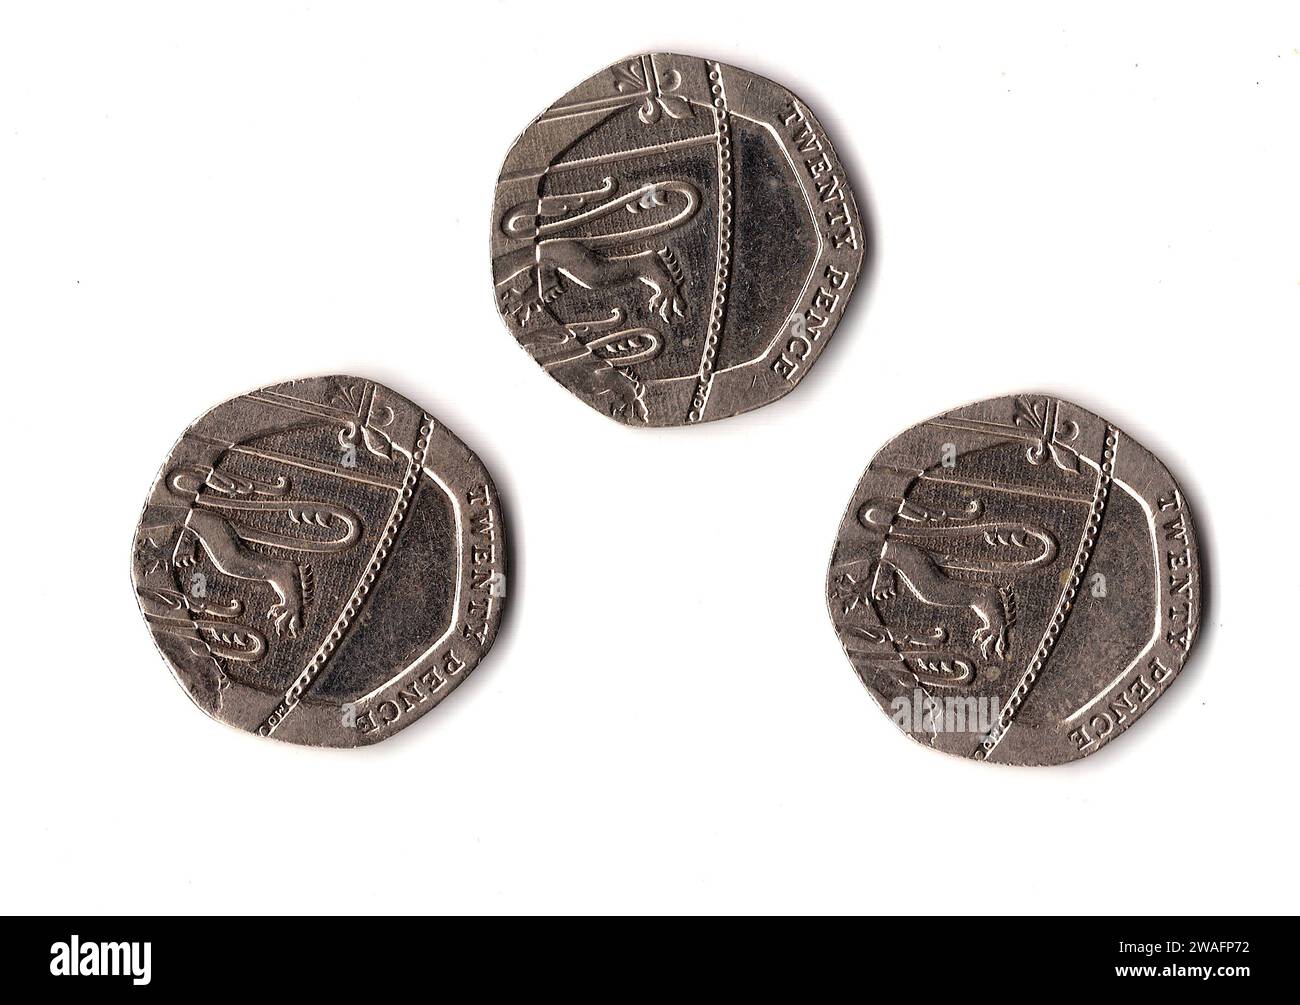 Vingt pièces de monnaie en pence du Royaume-Uni/Grande-Bretagne isolées sur fond blanc. Banque D'Images